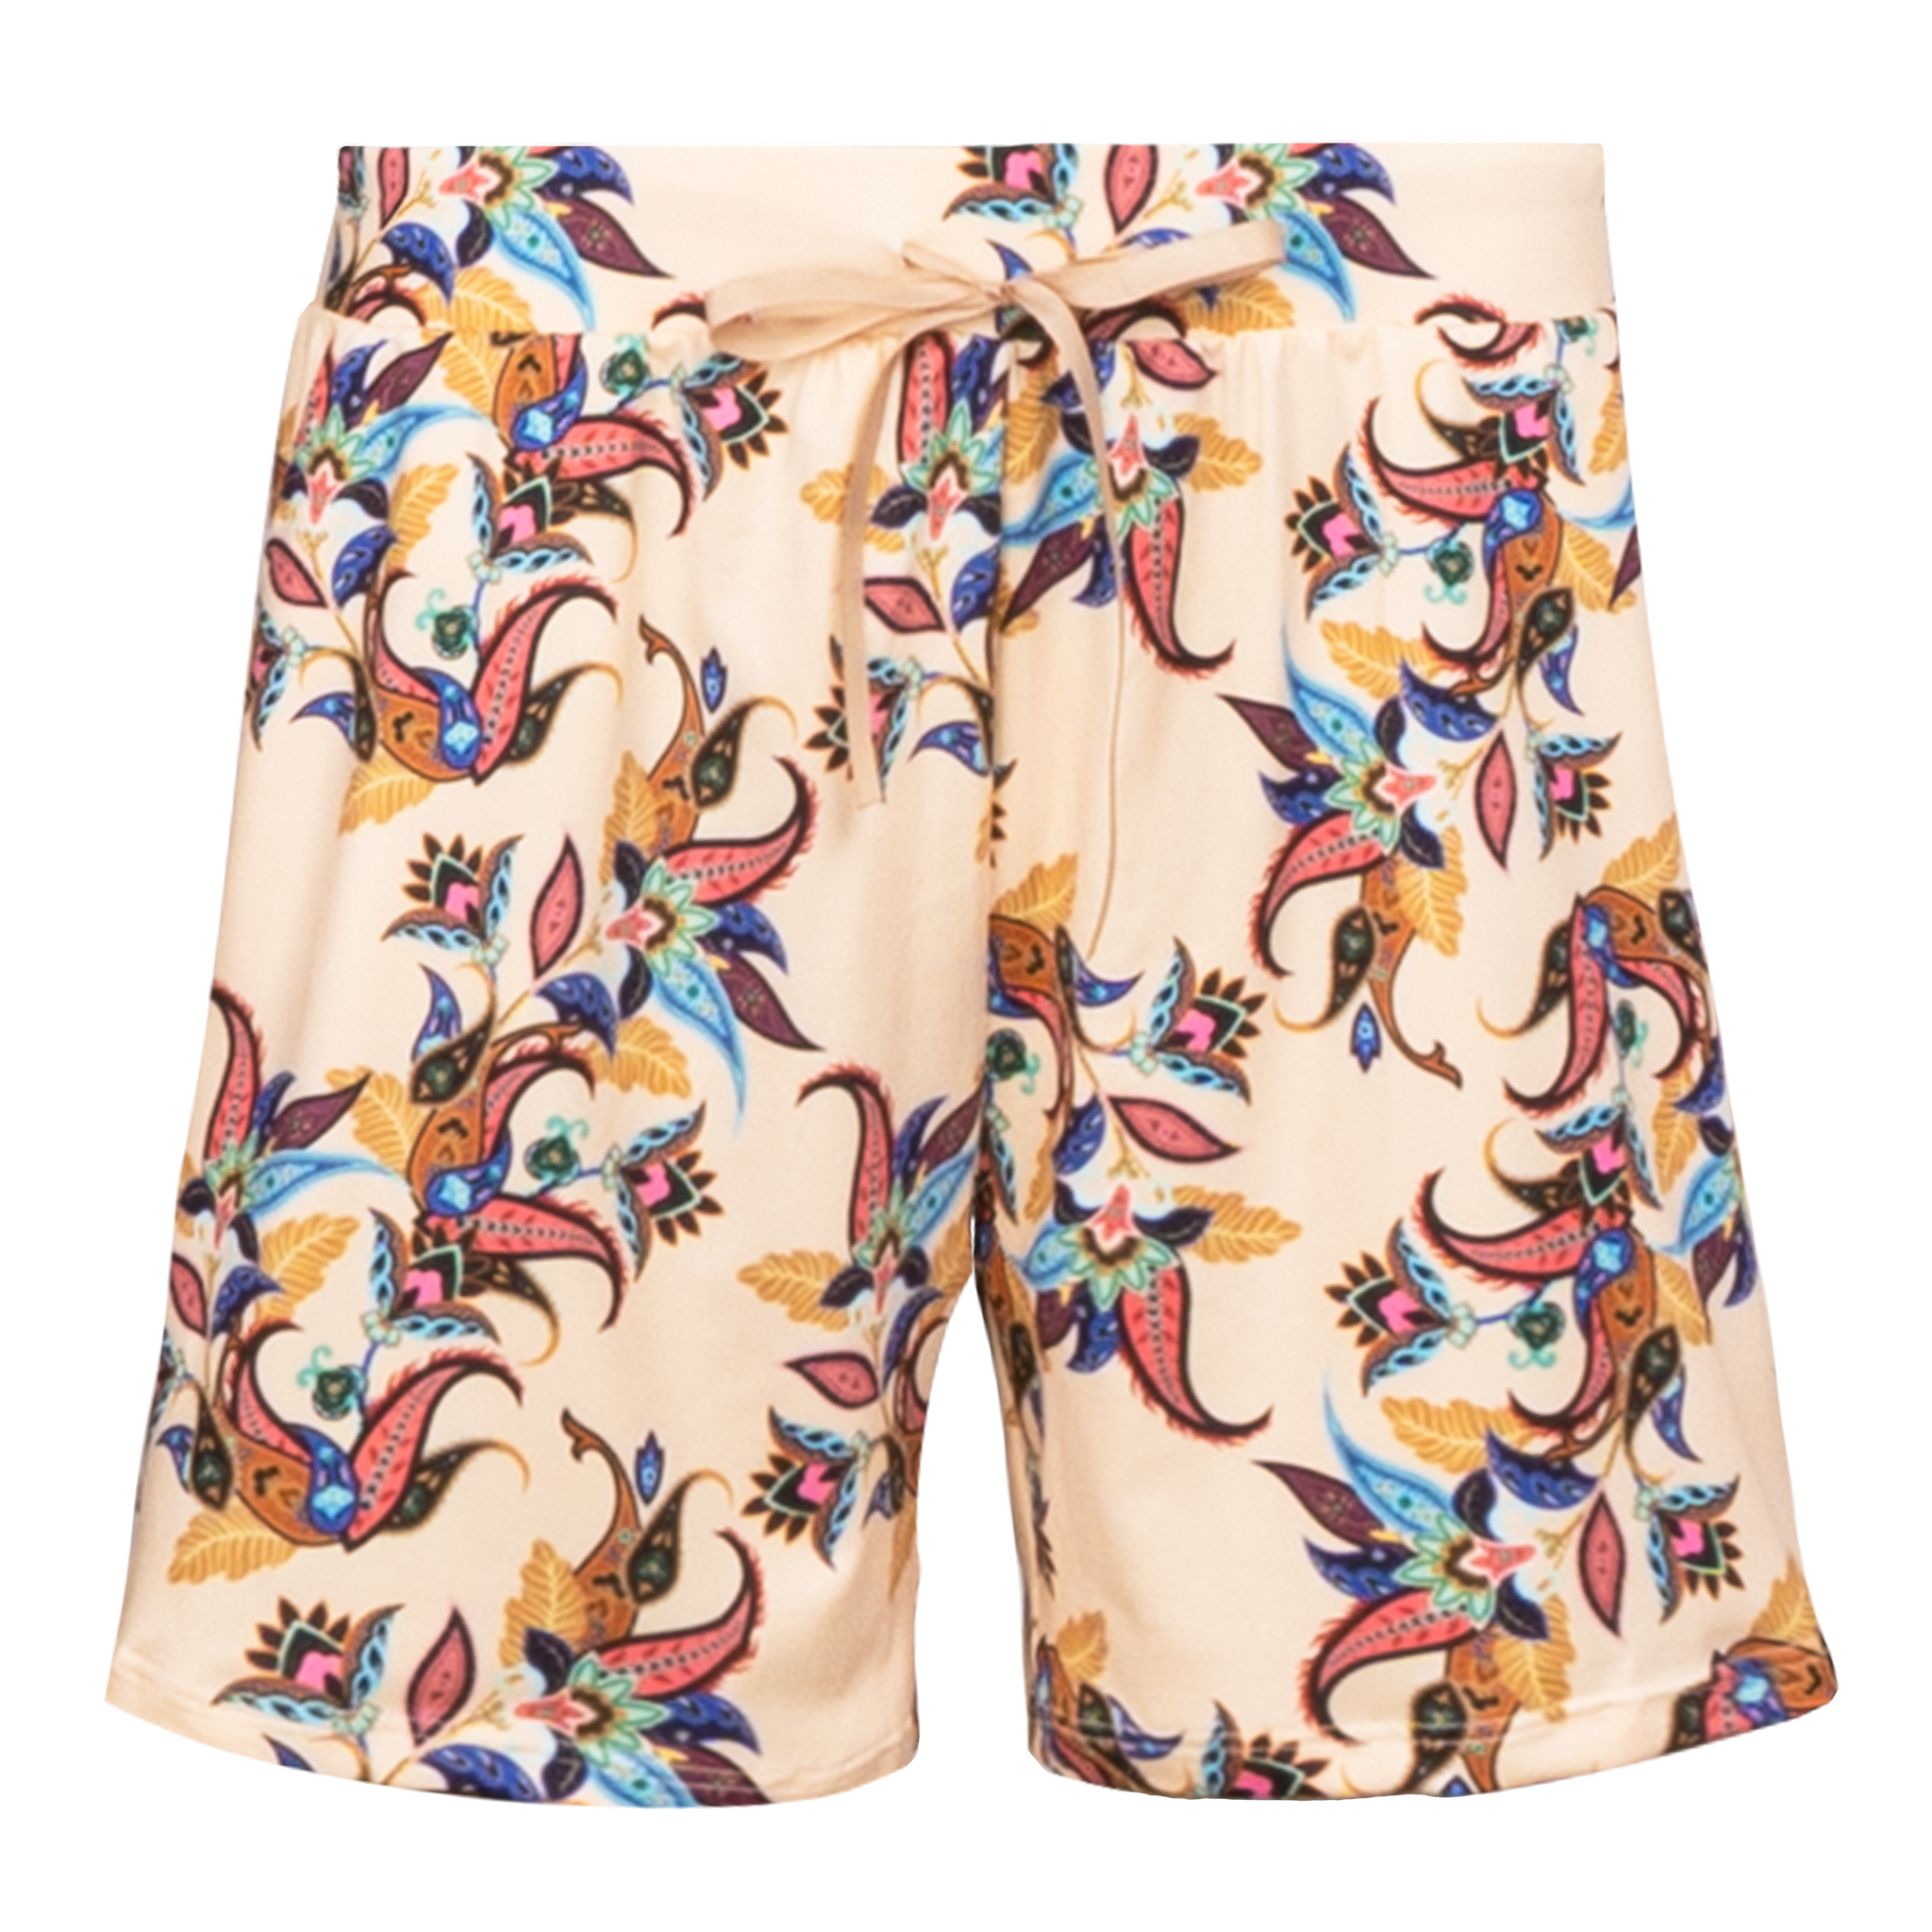 Liberté - Alma Shorts, 9517 - Vanilla Multicolor Paisley